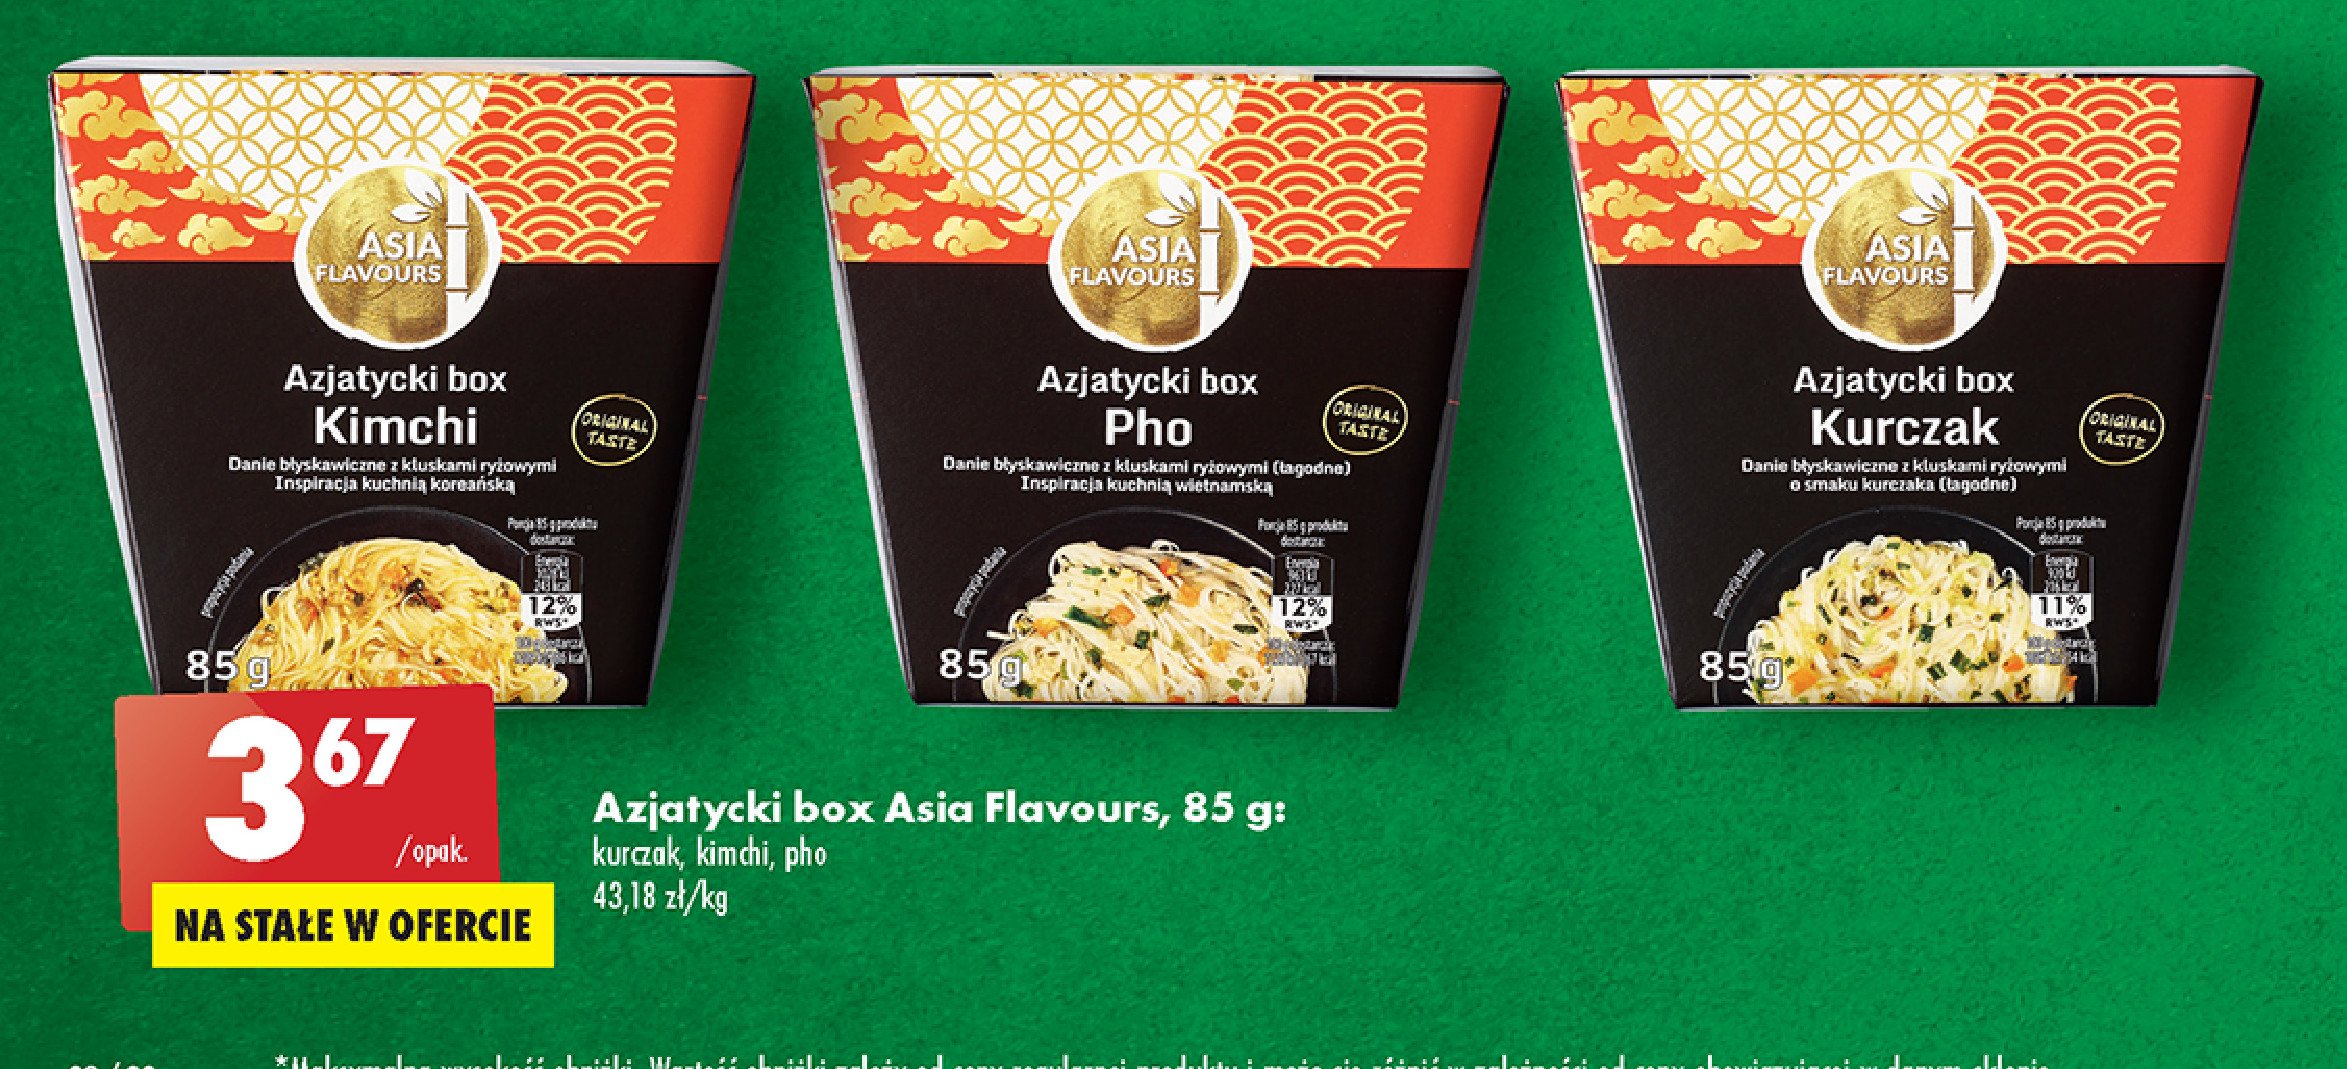 Azjatycki box kurczak Asia flavours promocje